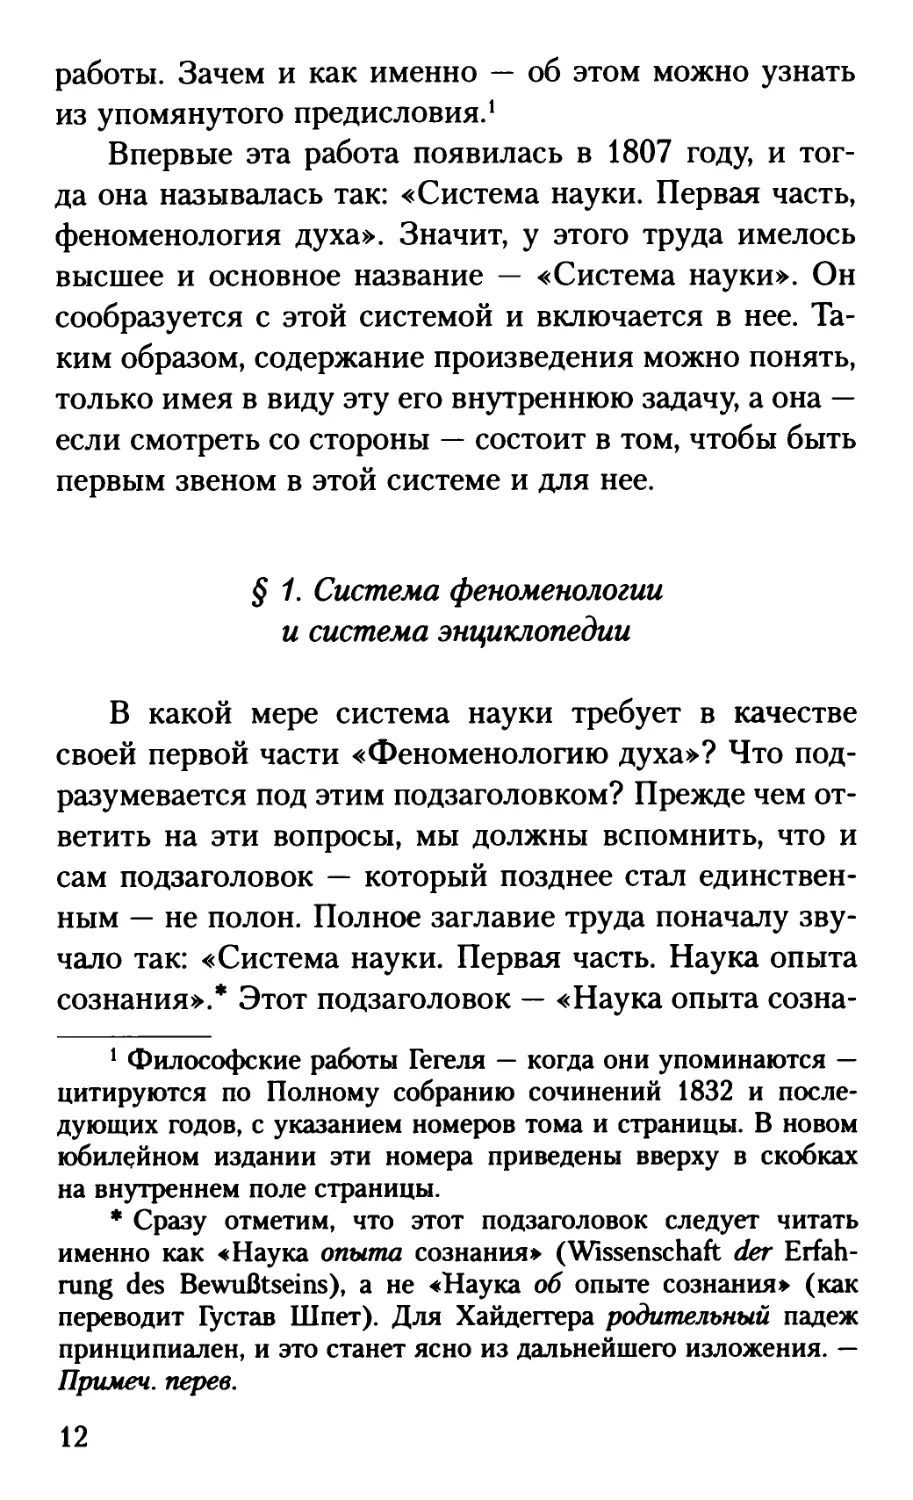 § 1. Система феноменологии и система энциклопедии